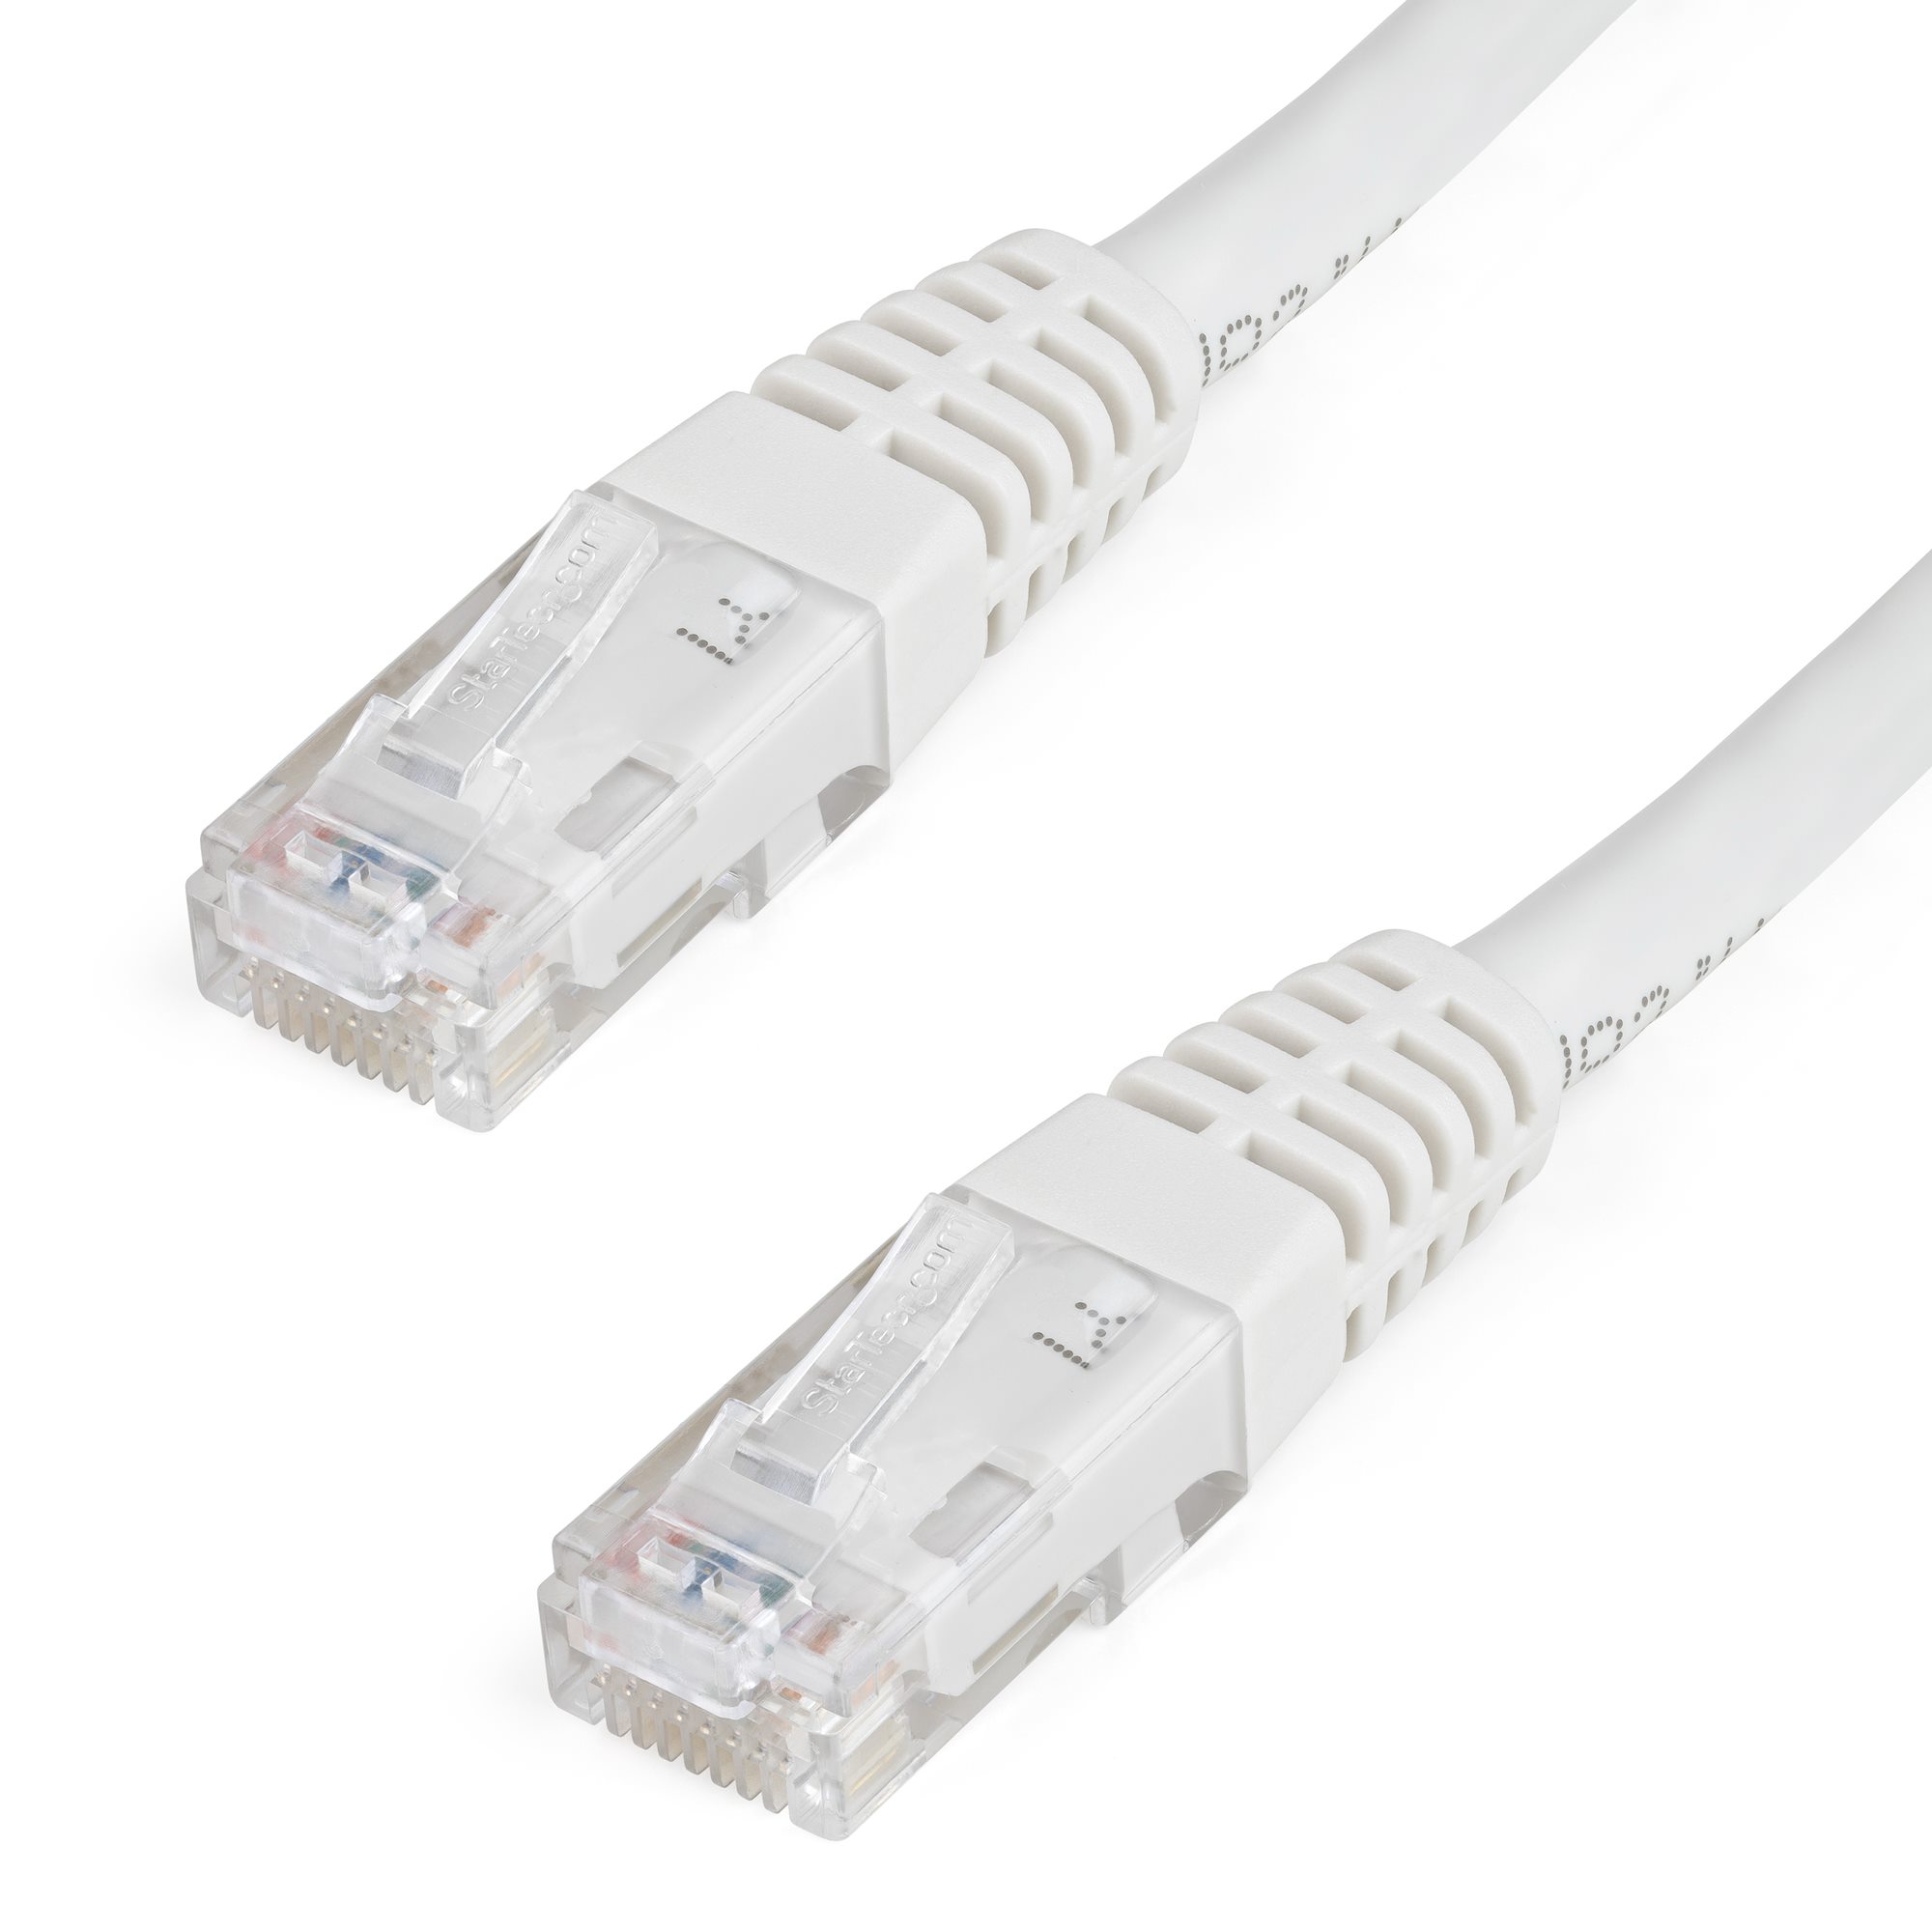 NEW 0.3M Ethernet Cat 6 UTP RJ45 LAN Network Cable RJ45 Straight 